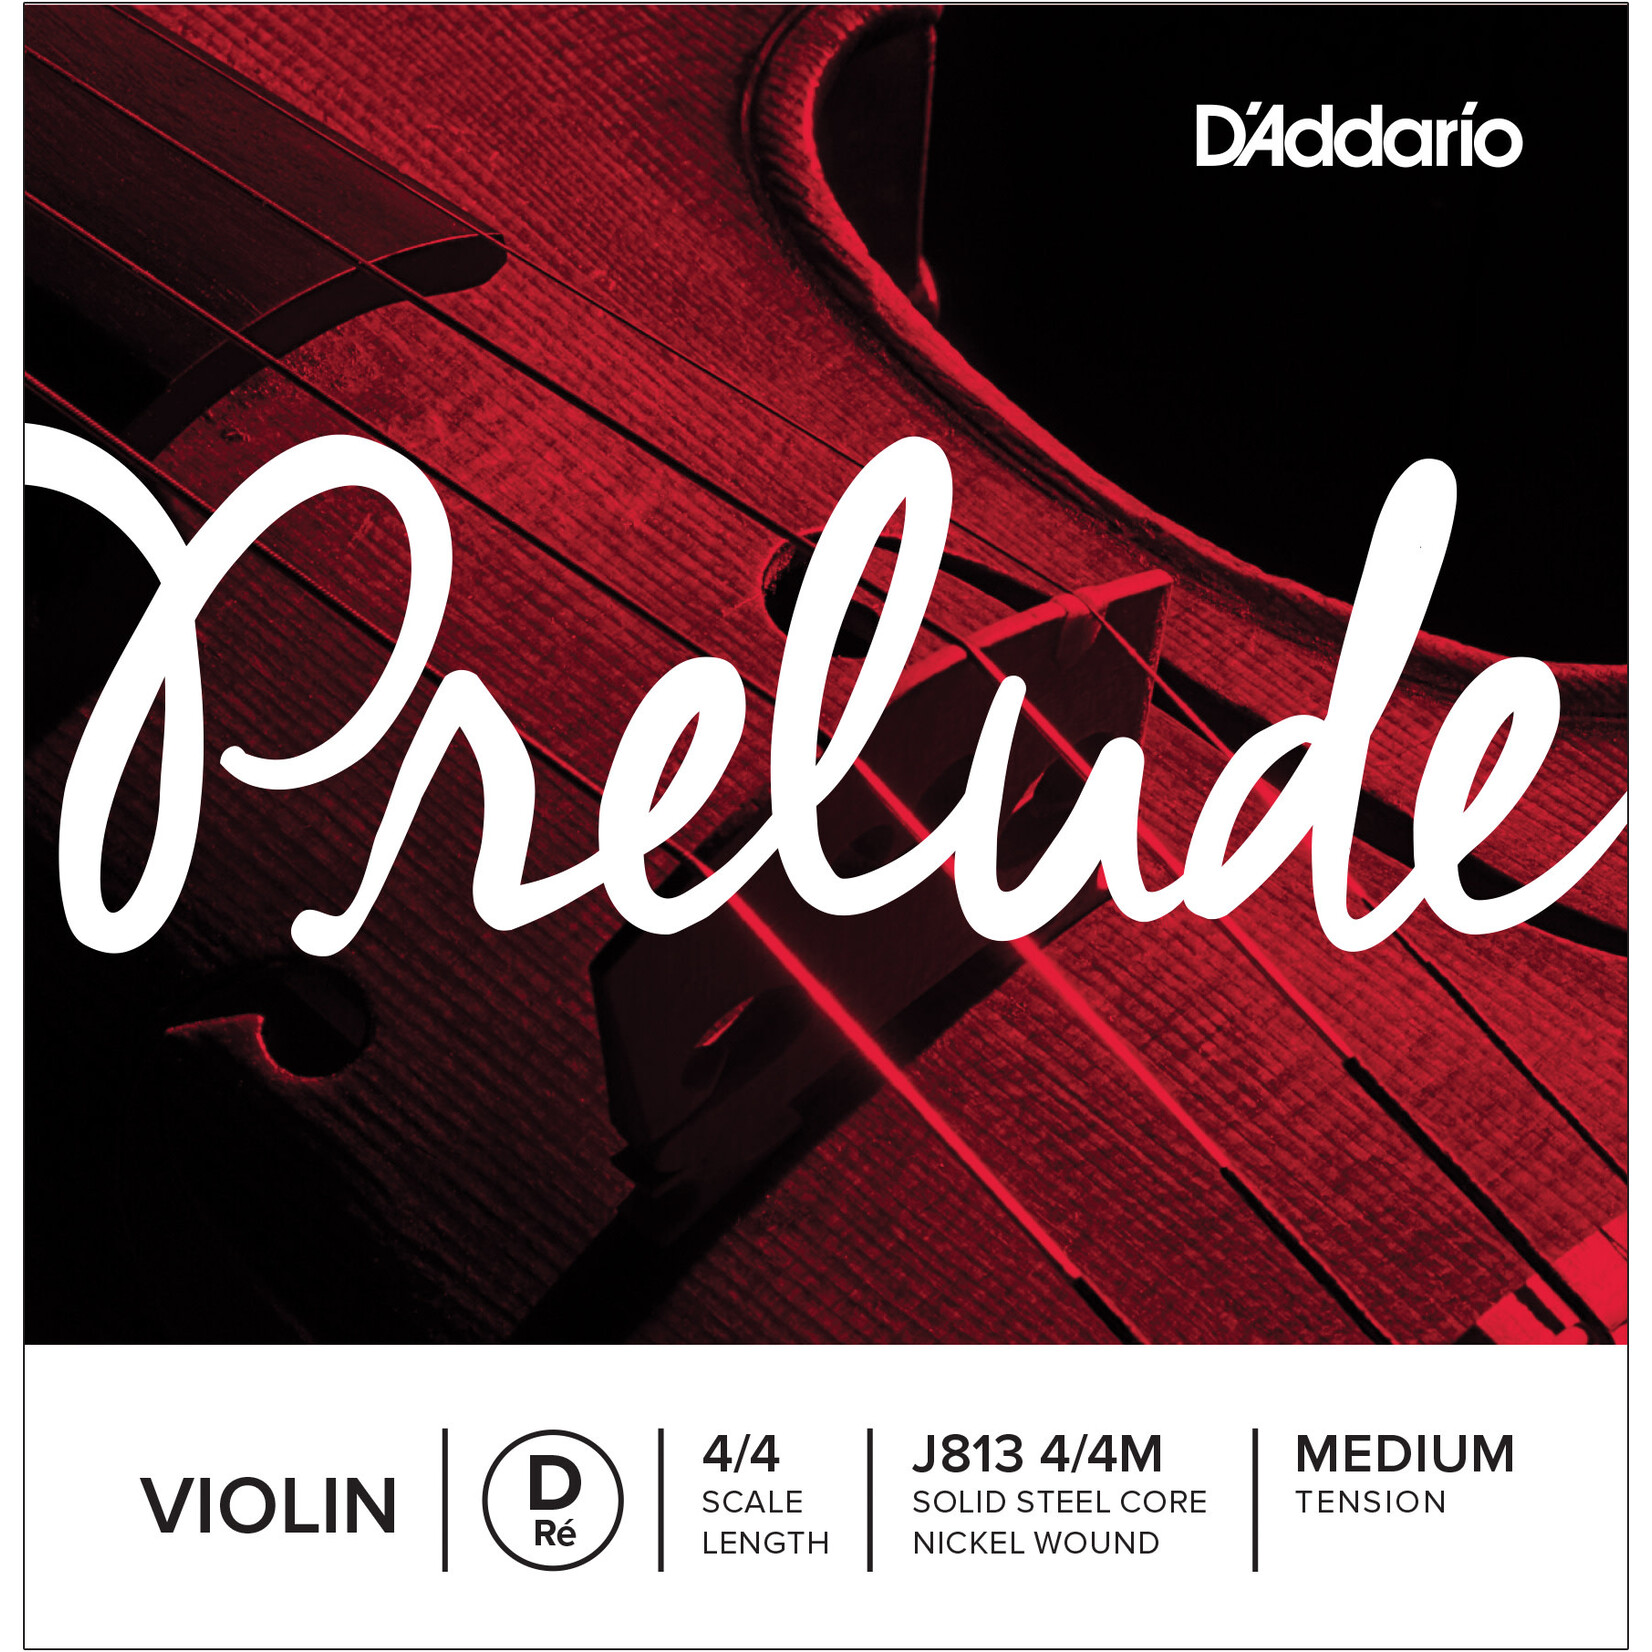 D'Addario D'Addario Prelude Violin D 4/4 Scale Medium Tension *Single String